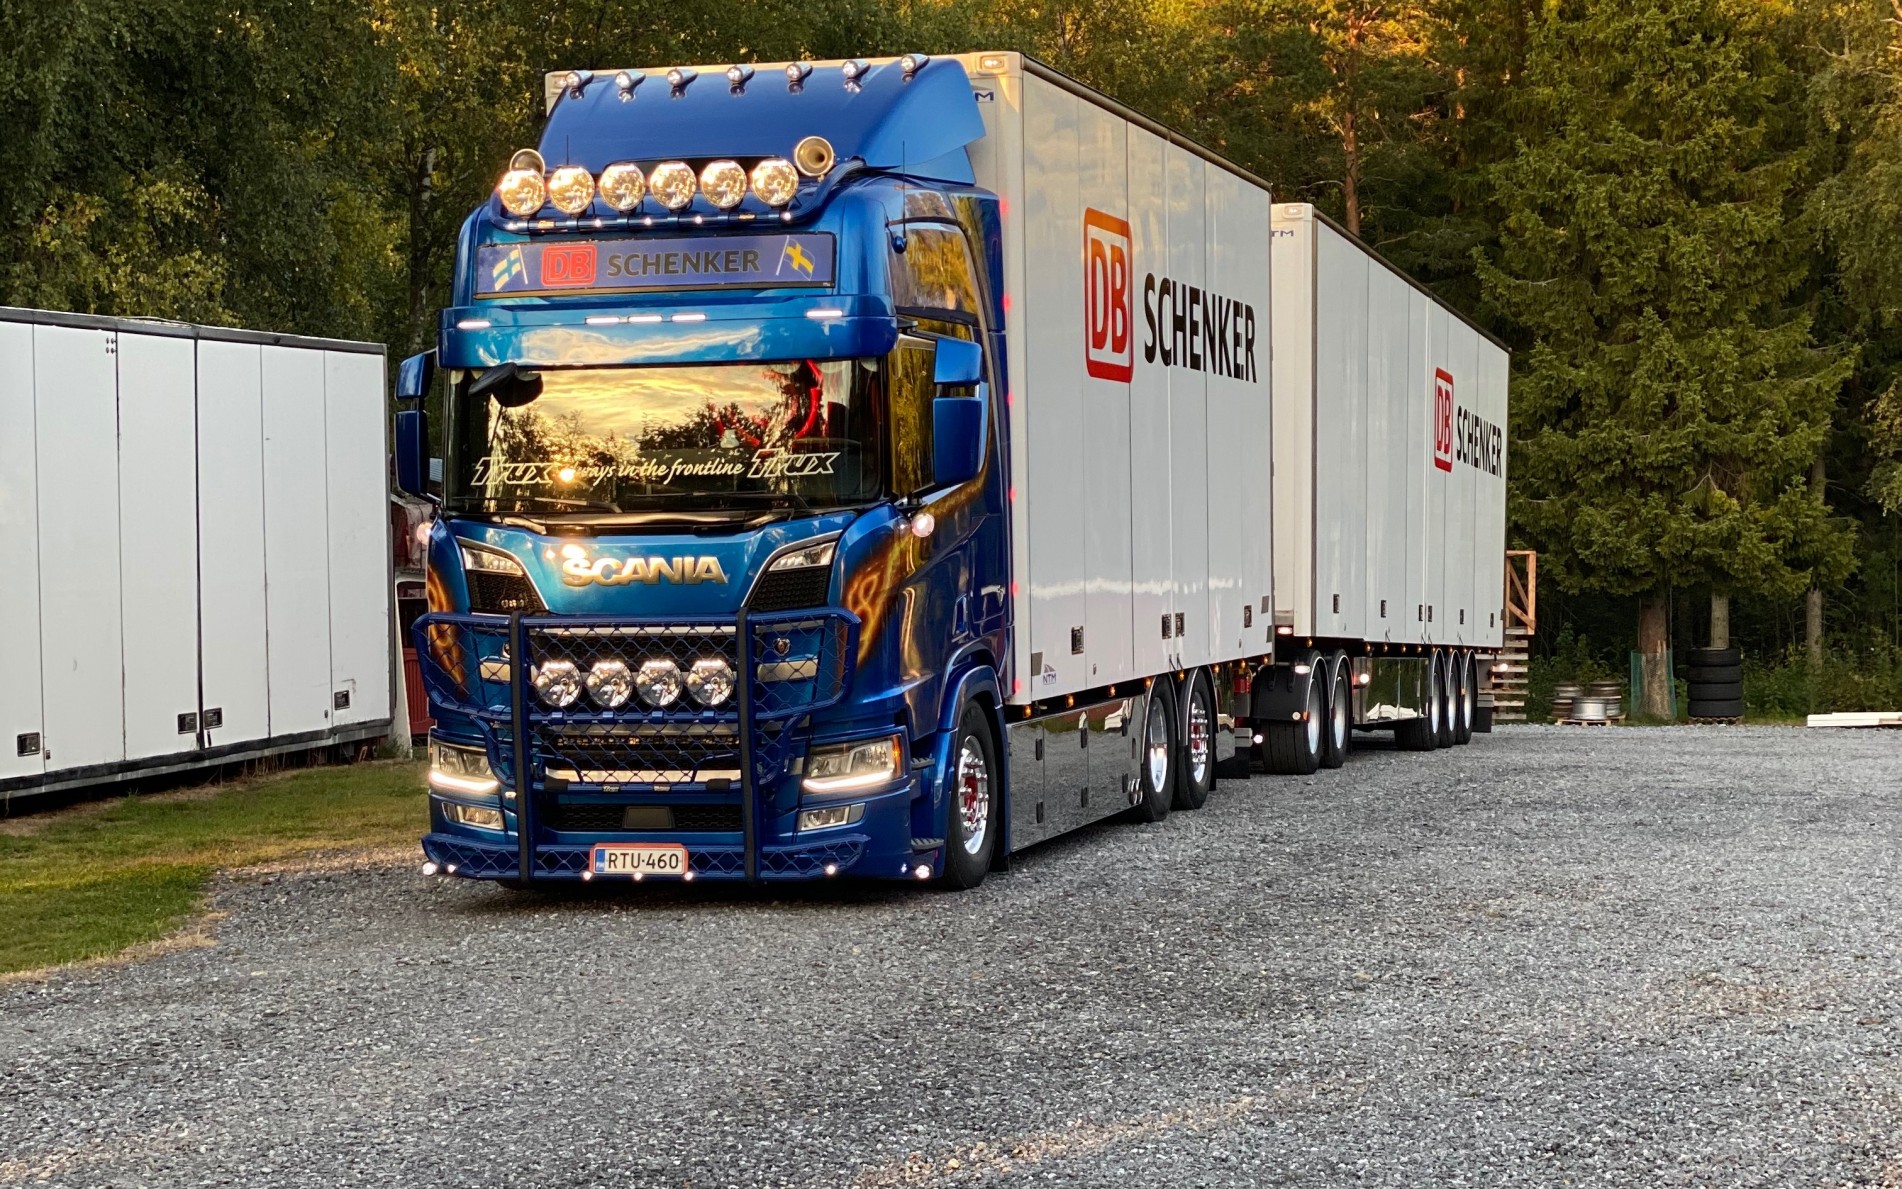 Scania Nextgen 2018